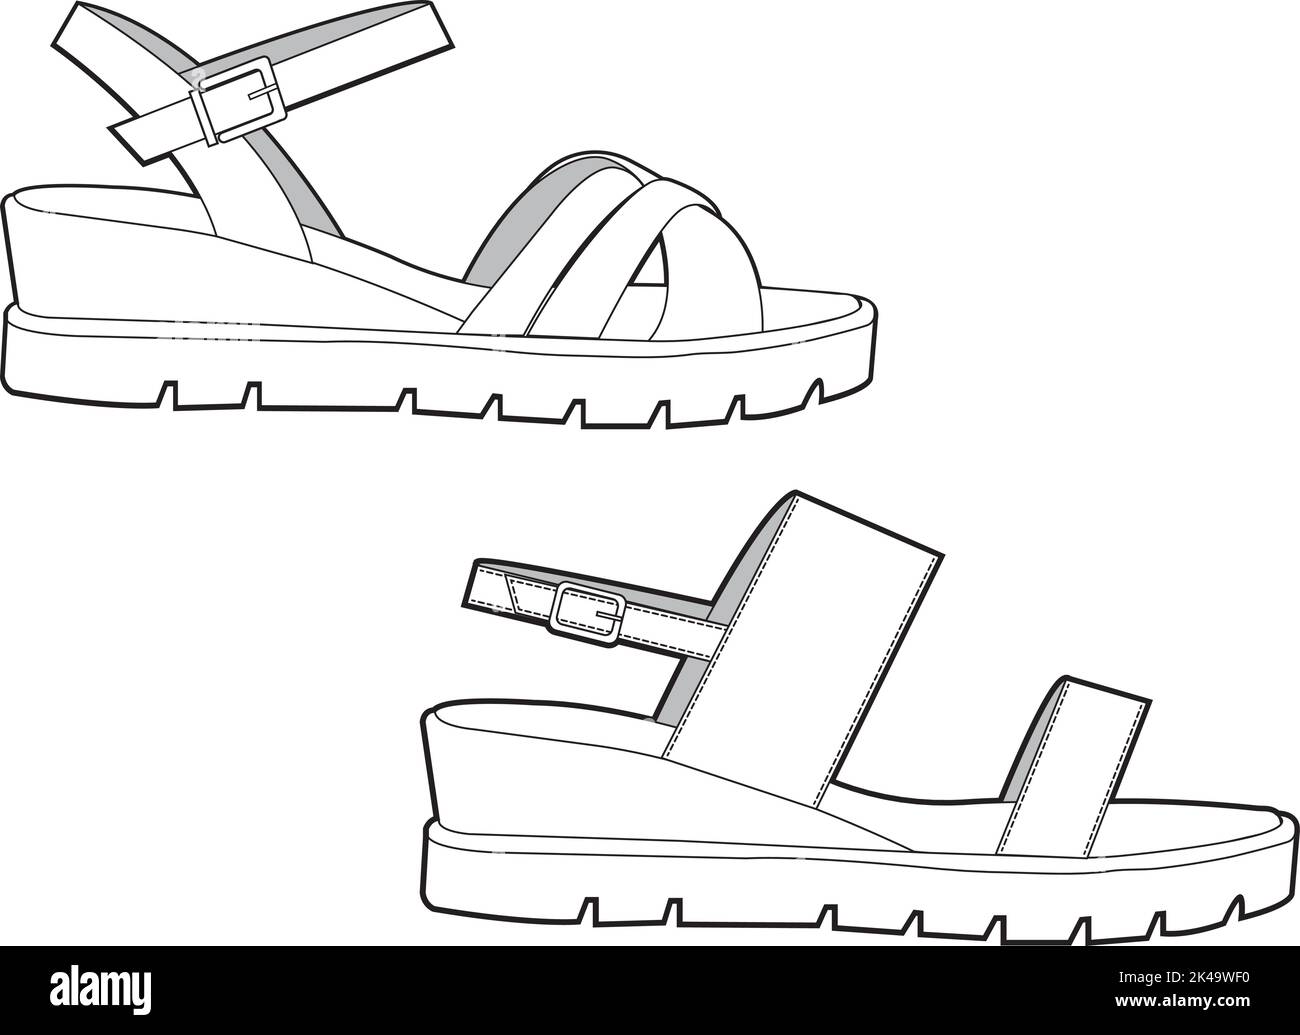 Une esquisse de chaussure sur un fond blanc Illustration de Vecteur